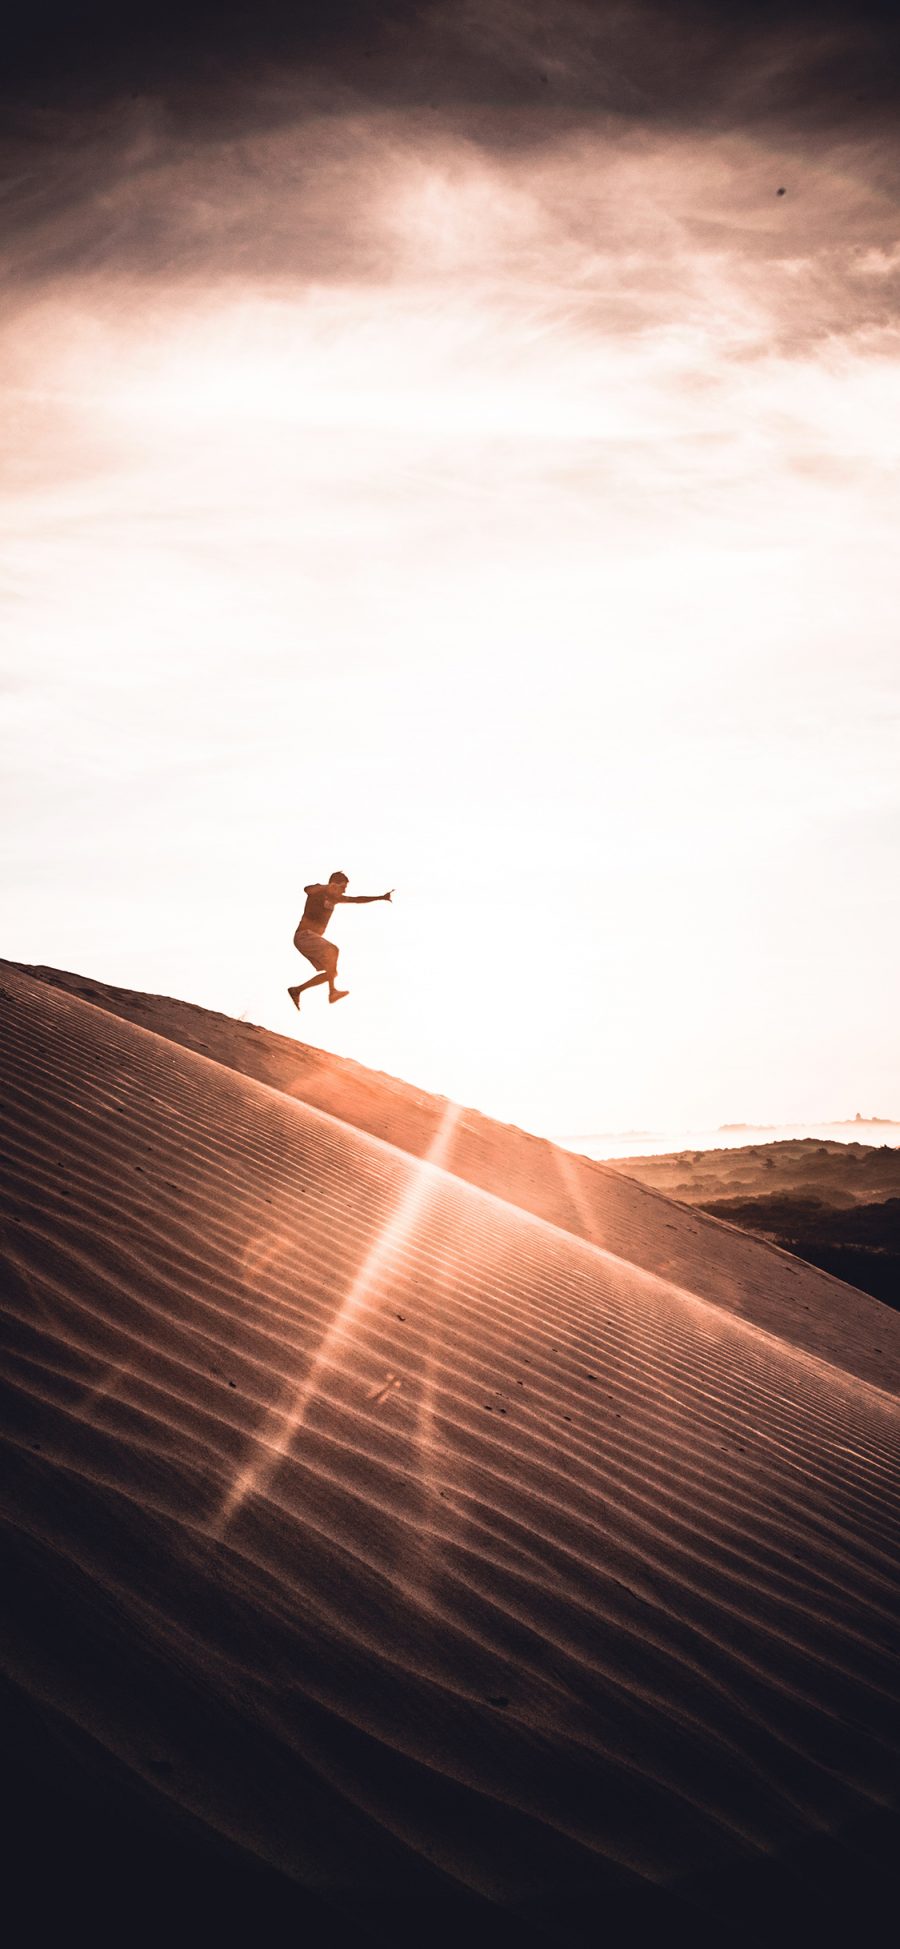 [2436×1125]沙漠 阳光 人物 跳跃 苹果手机壁纸图片